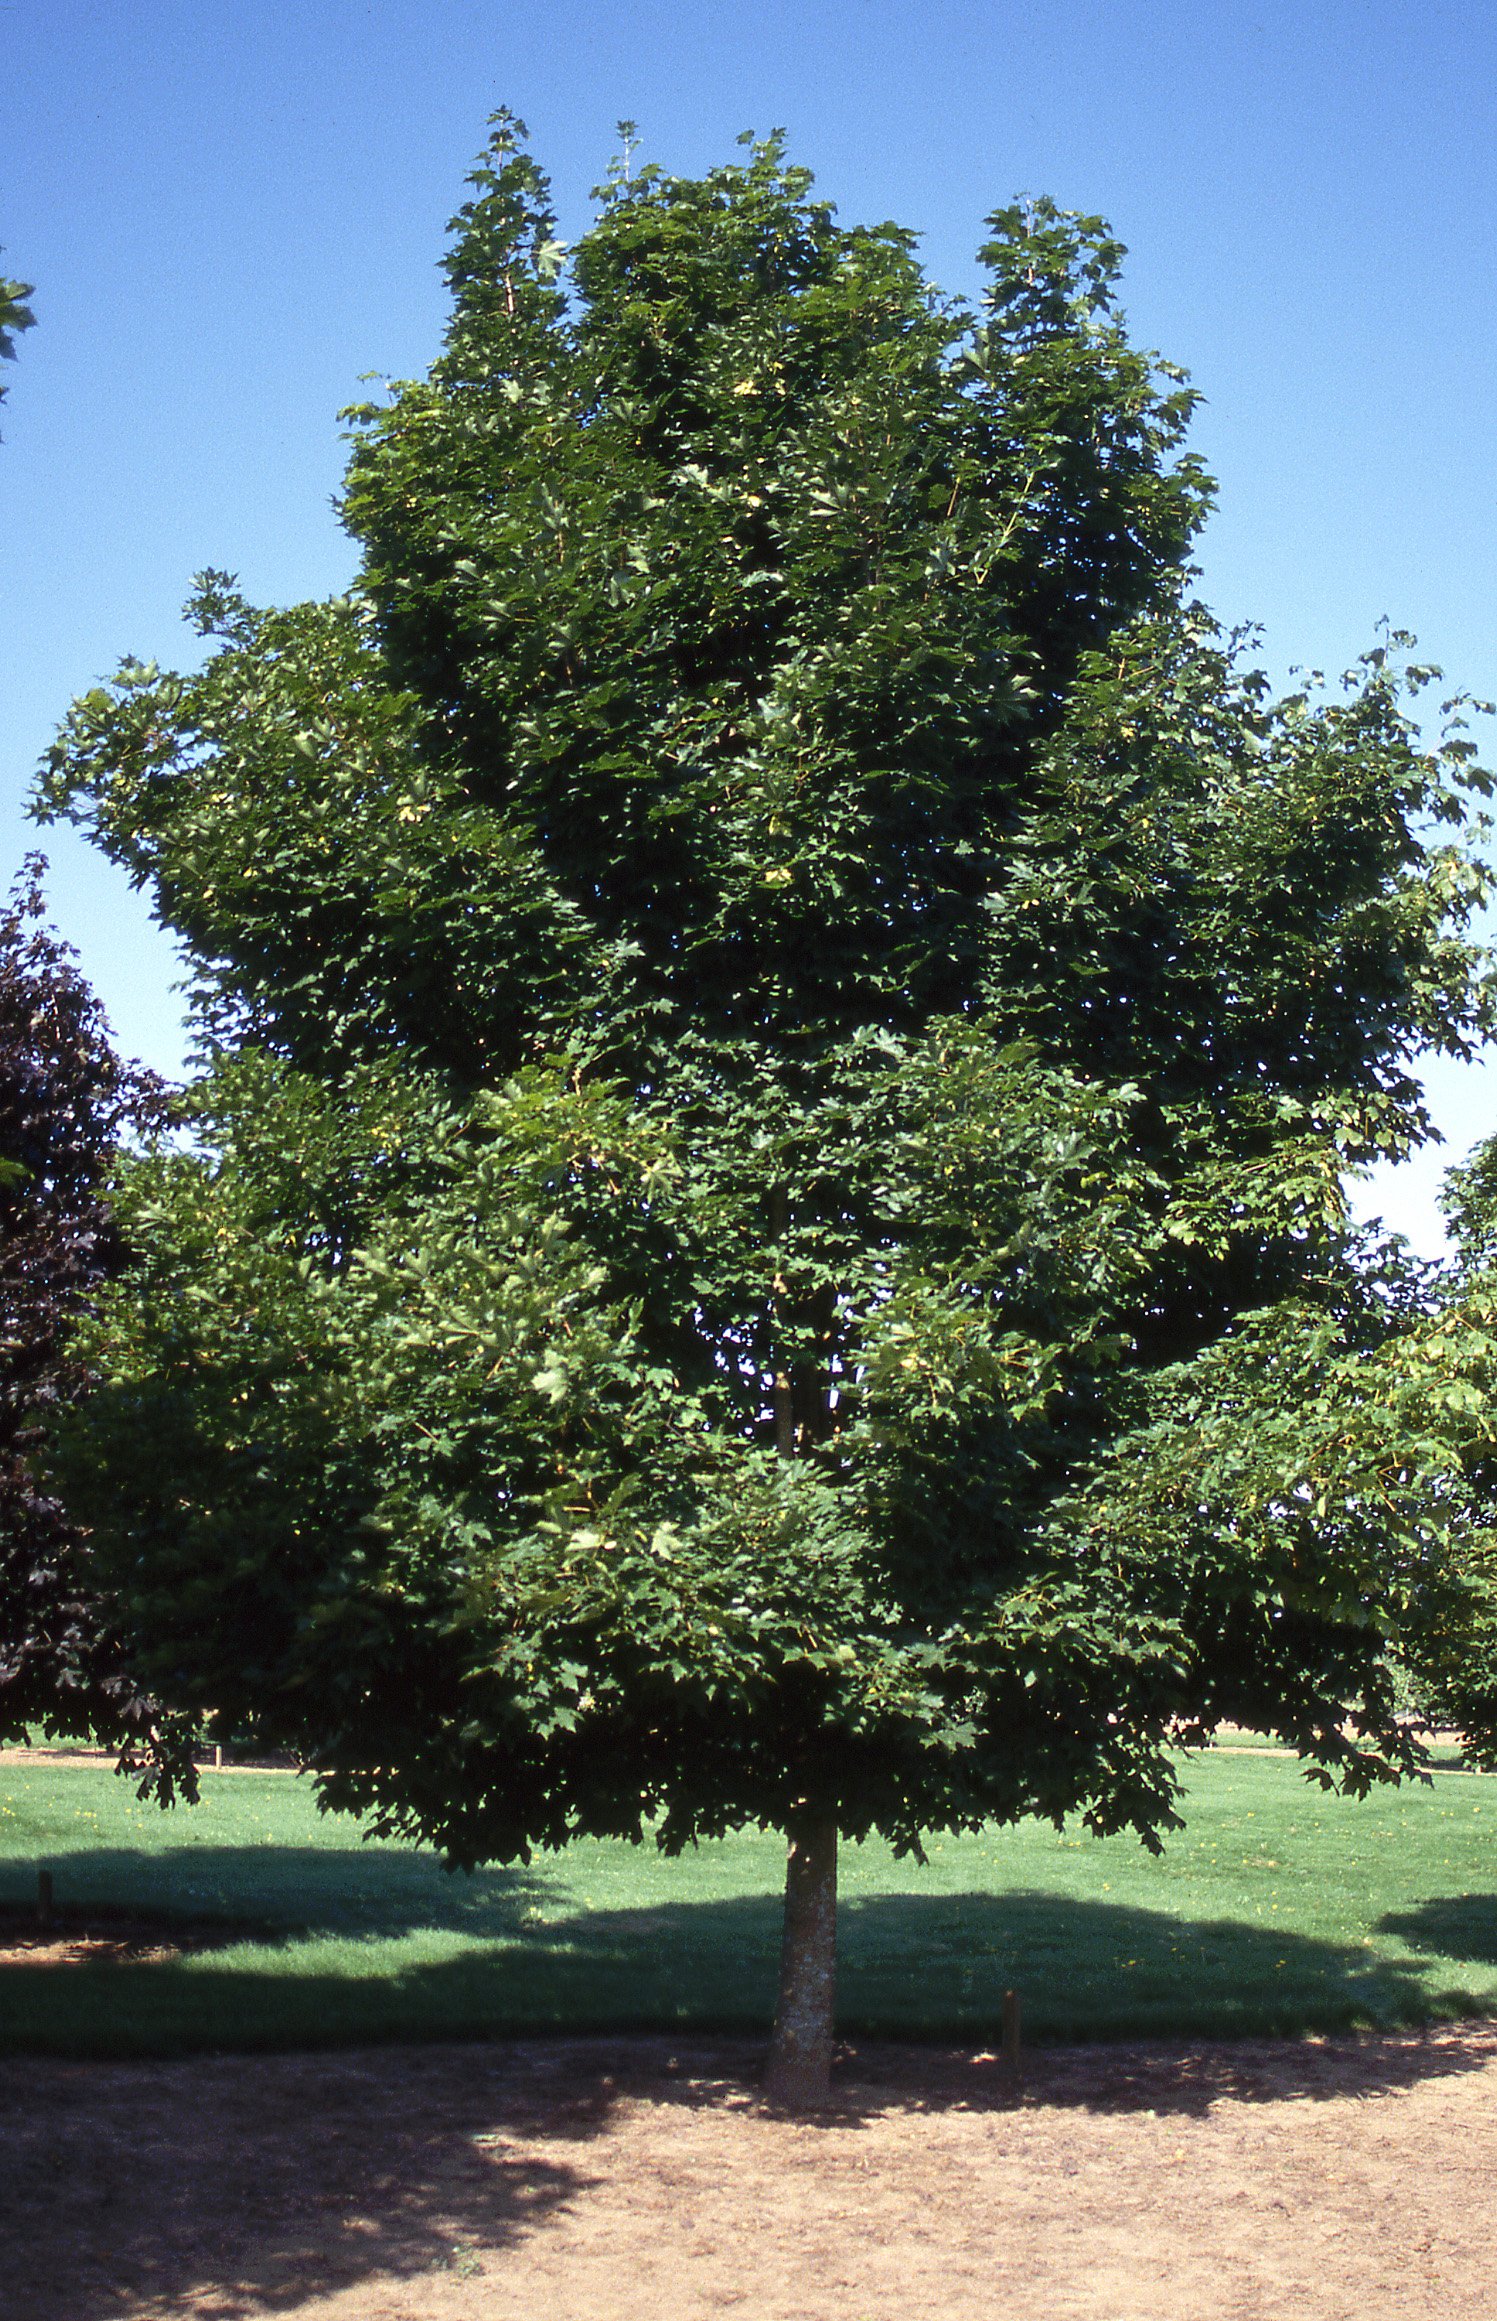 Copy of Emerald Queen Maple tree.jpg